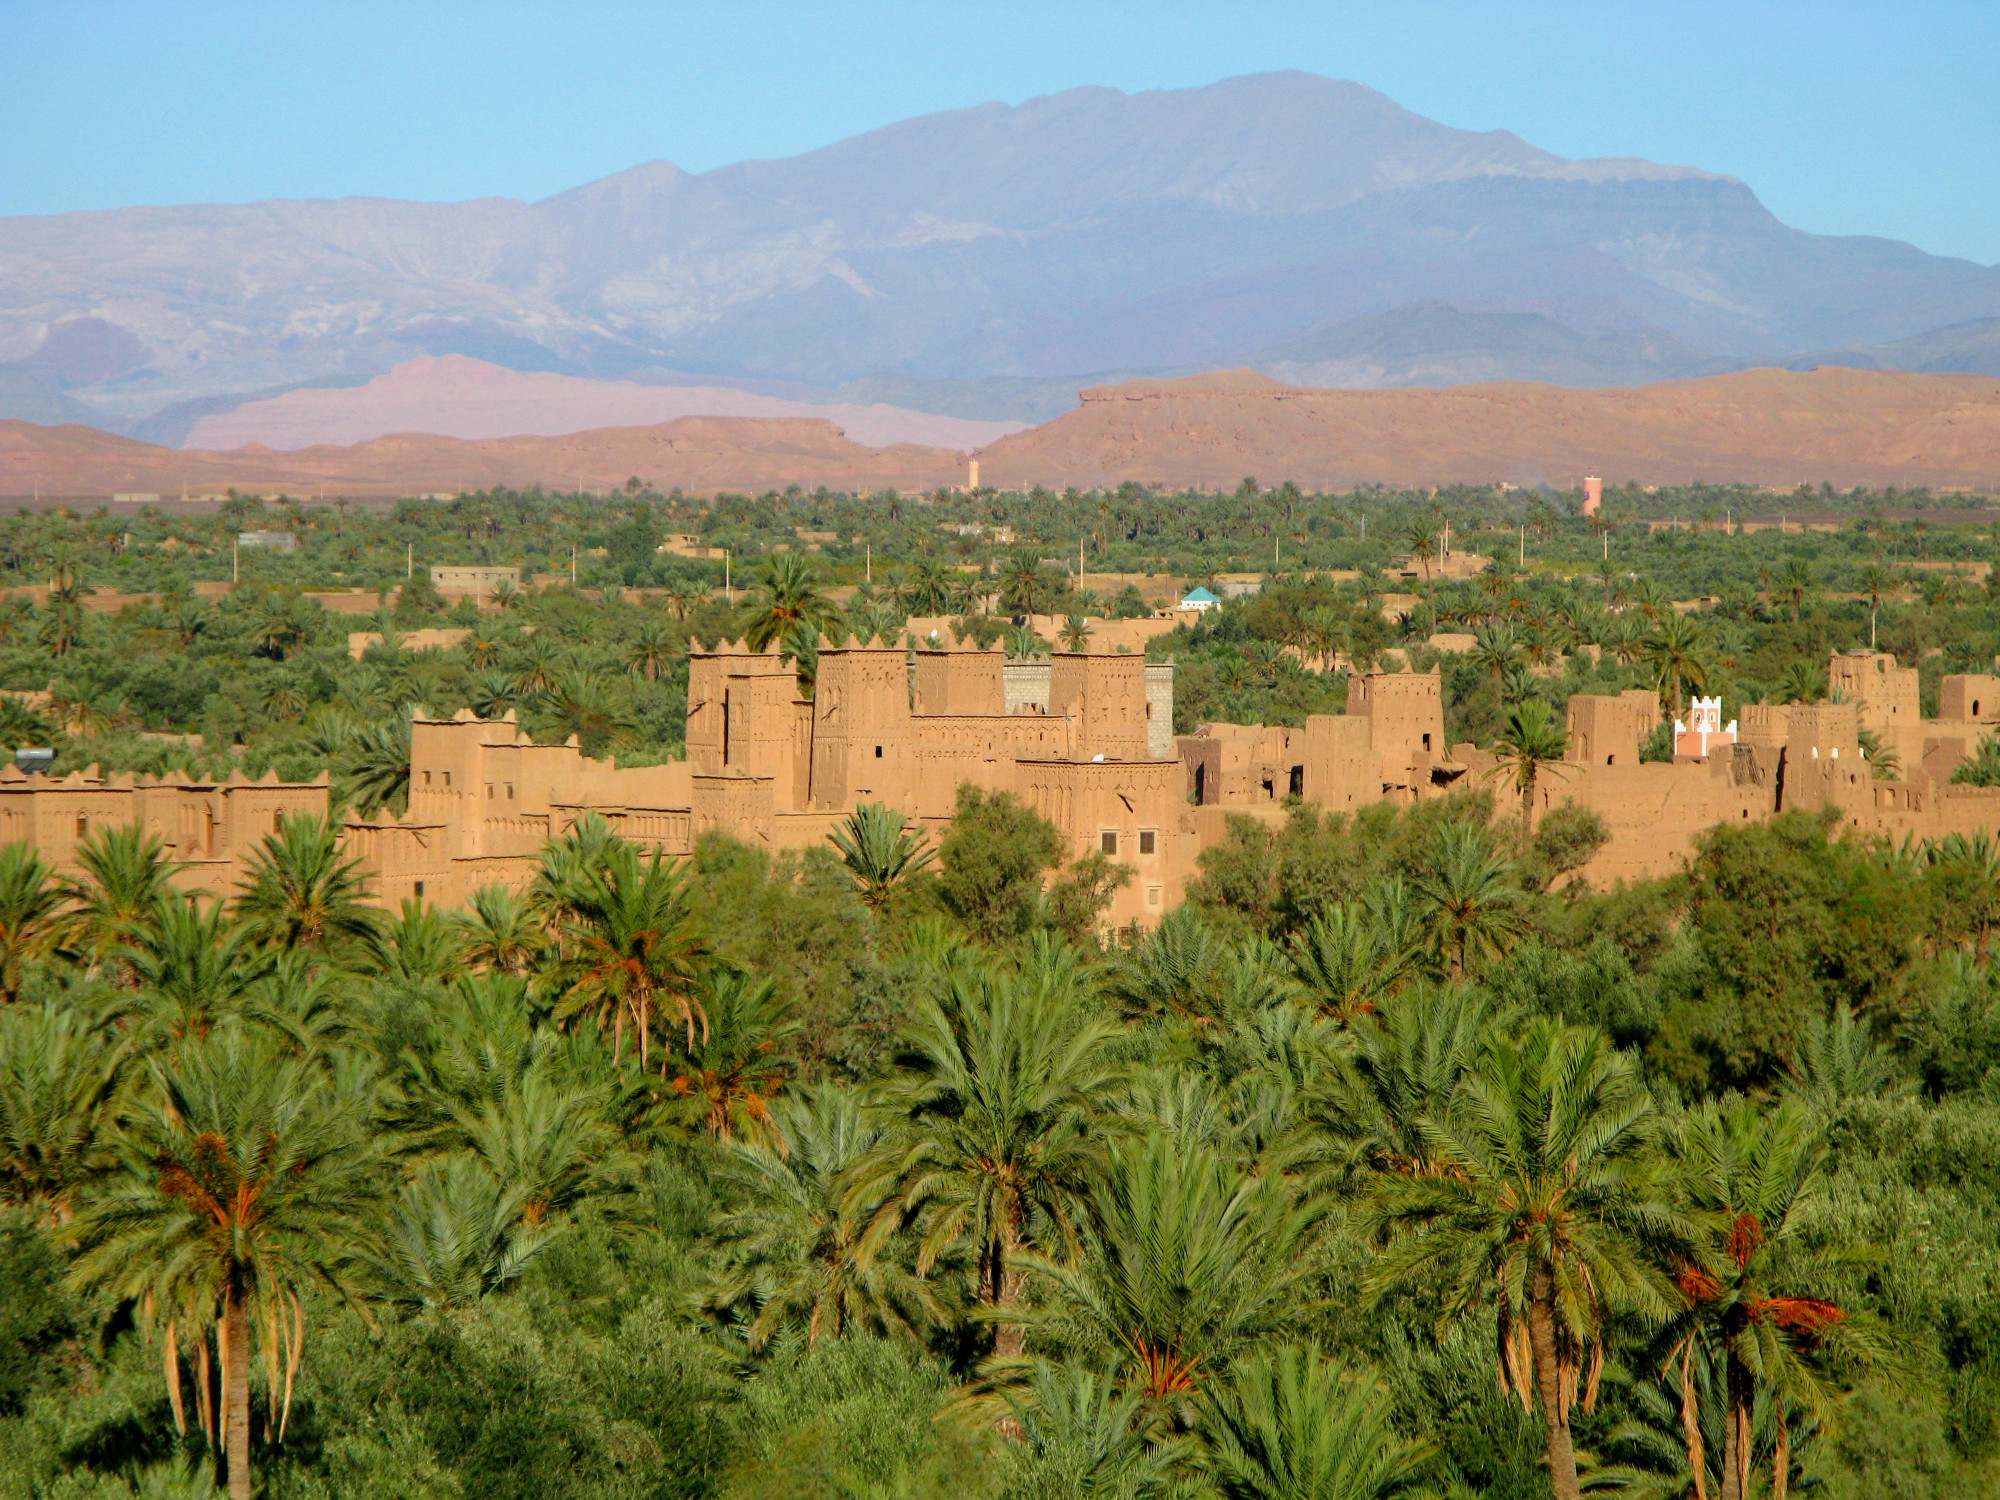 ksar-berber-house-ouarzazate-morocco